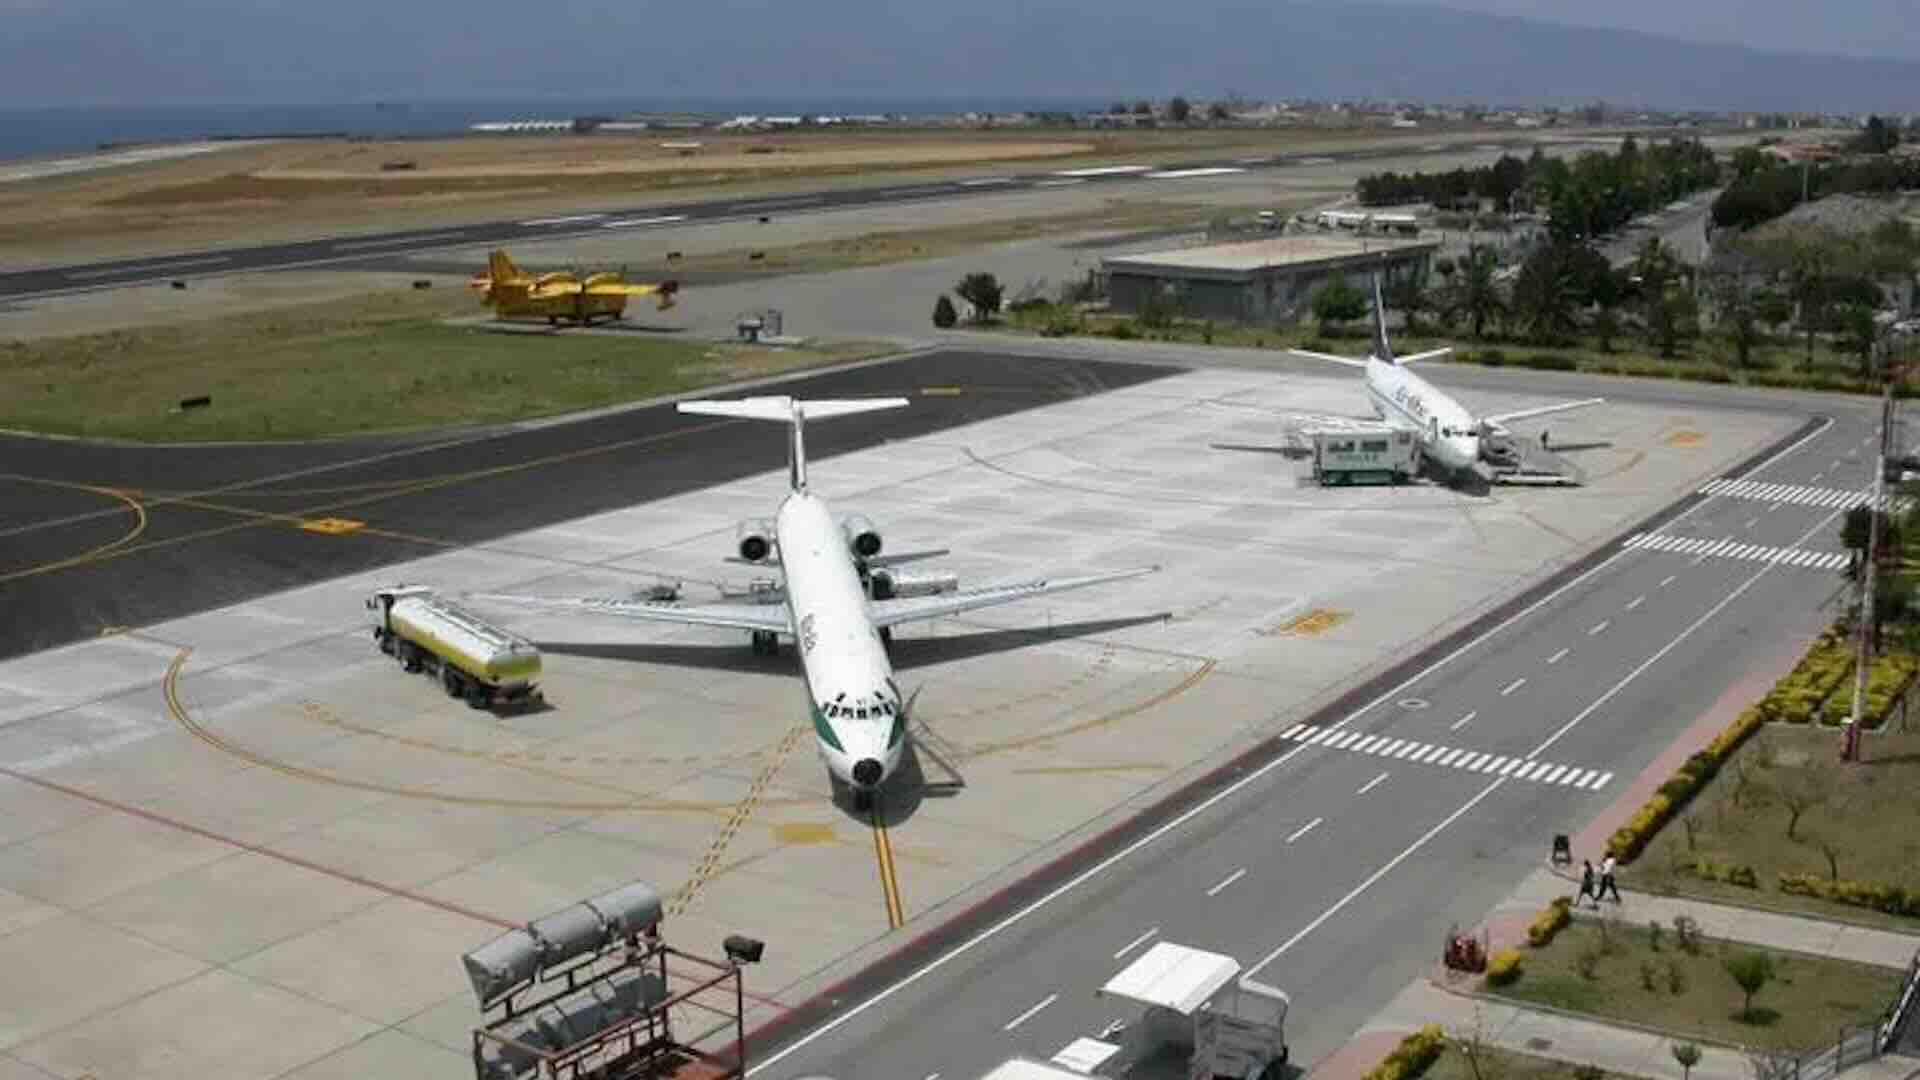 Aeroporto Reggio Calabria chiuso e voli aerei bloccati per incidente